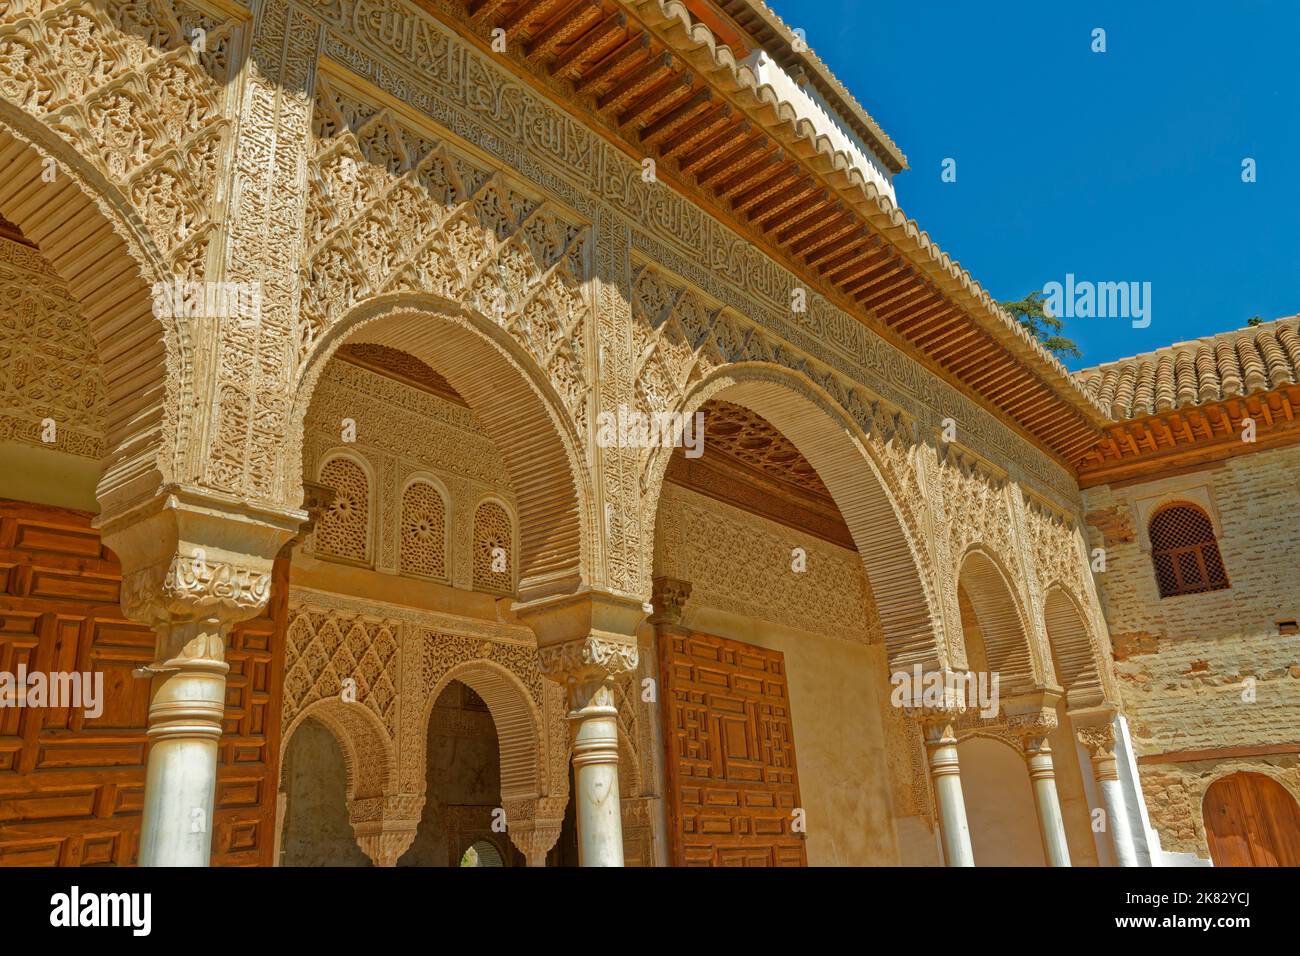 Architektonisches Detail der Palastgebäude in den Generalife-Gärten im Palastkomplex Alhambra in Granada, Spanien. Stockfoto